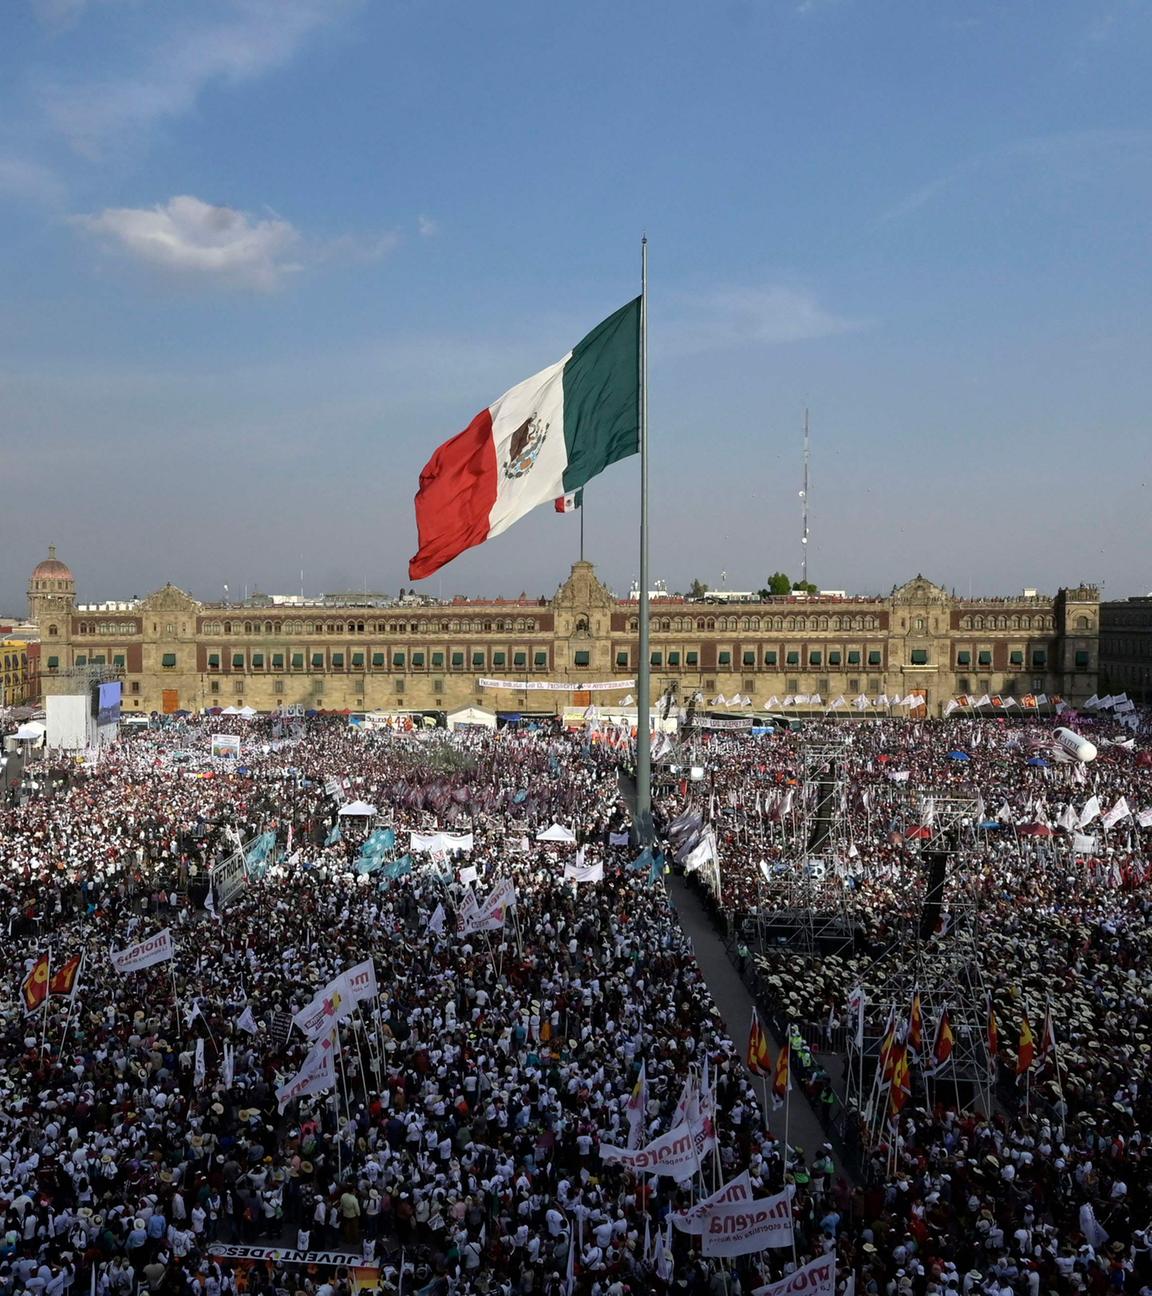 Anhänger der Kandidatin Claudia Sheinbaum bei einer Wahlkampfveranstaltung in Mexiko.